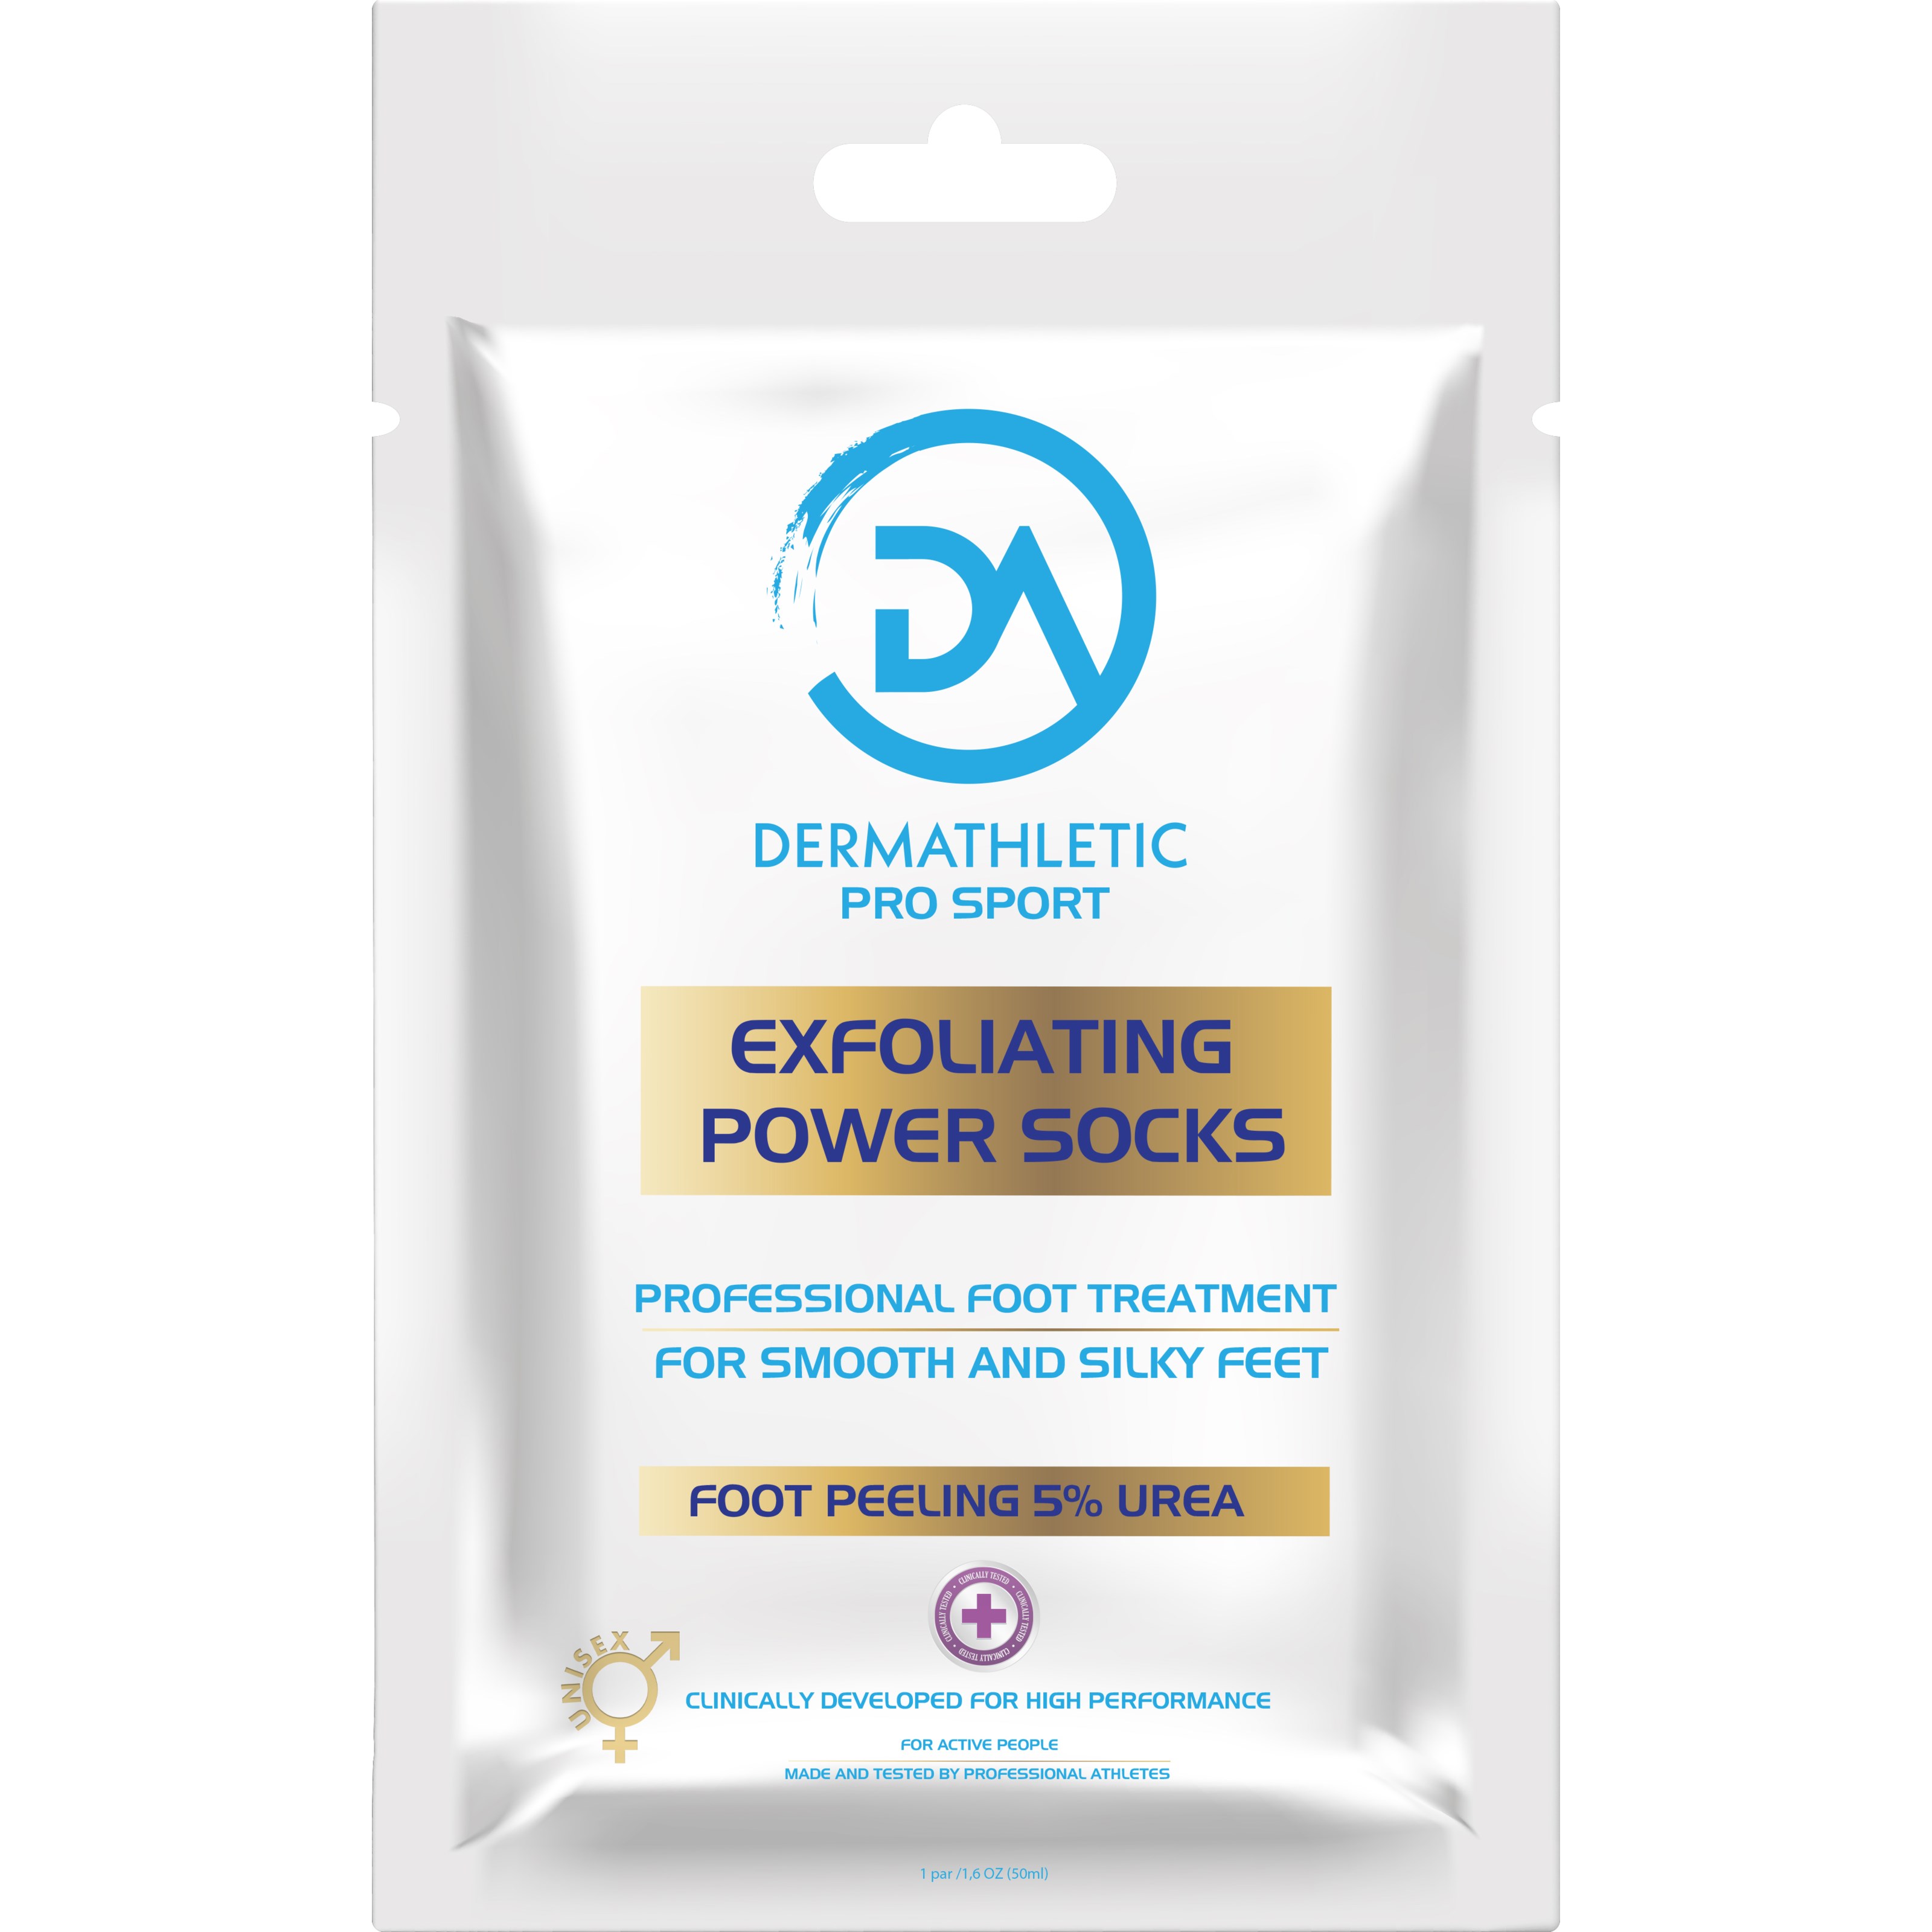 Bilde av Dermathletic Pro Sport Exfoliating Power Socks